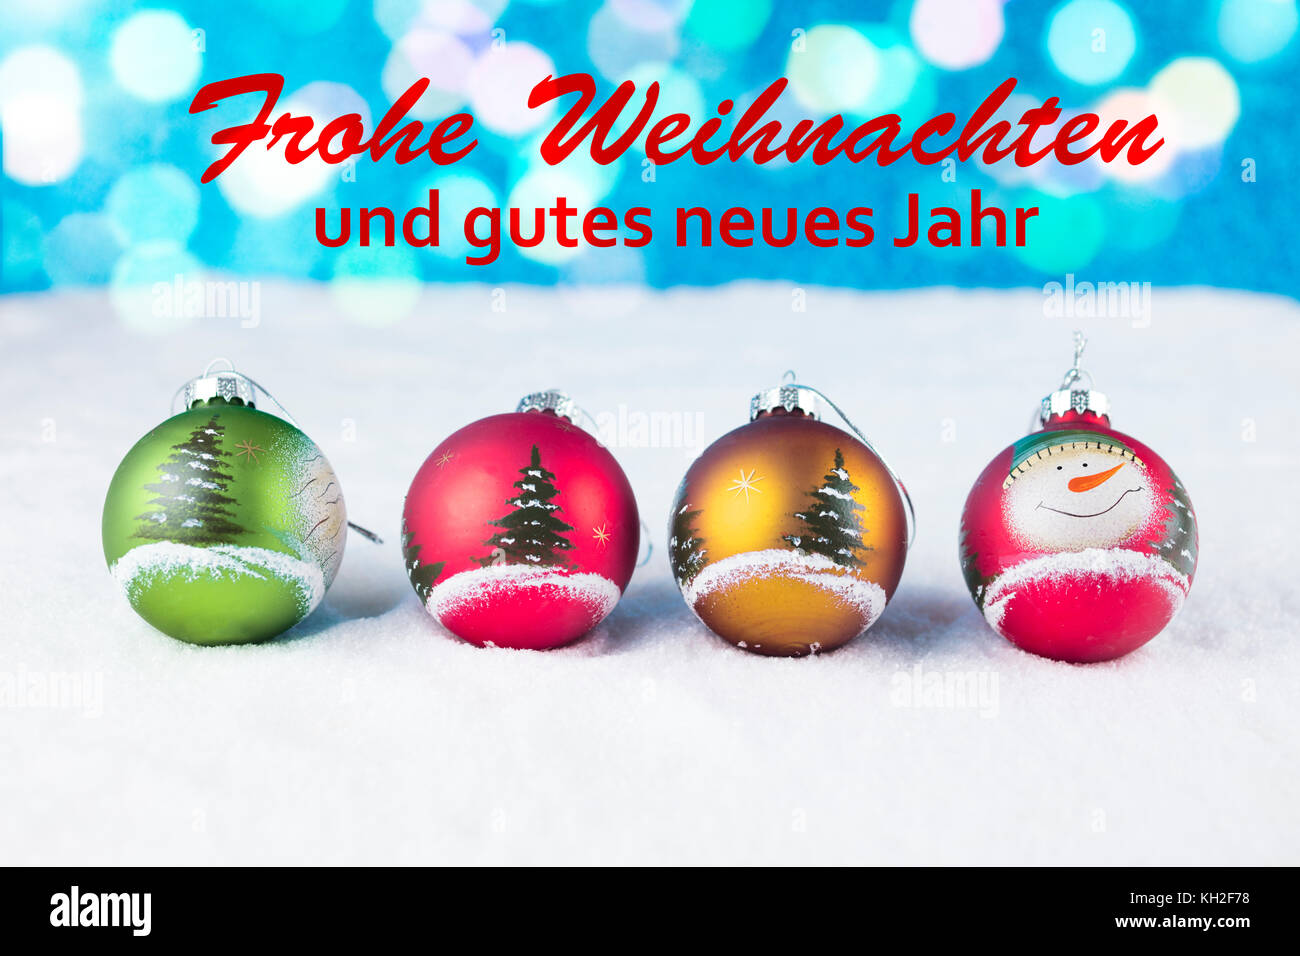 Groupe de boules de Noël colorées avec du texte en allemand "frohe weihnachten und gutes neues jahr' dans la neige blanche. Banque D'Images